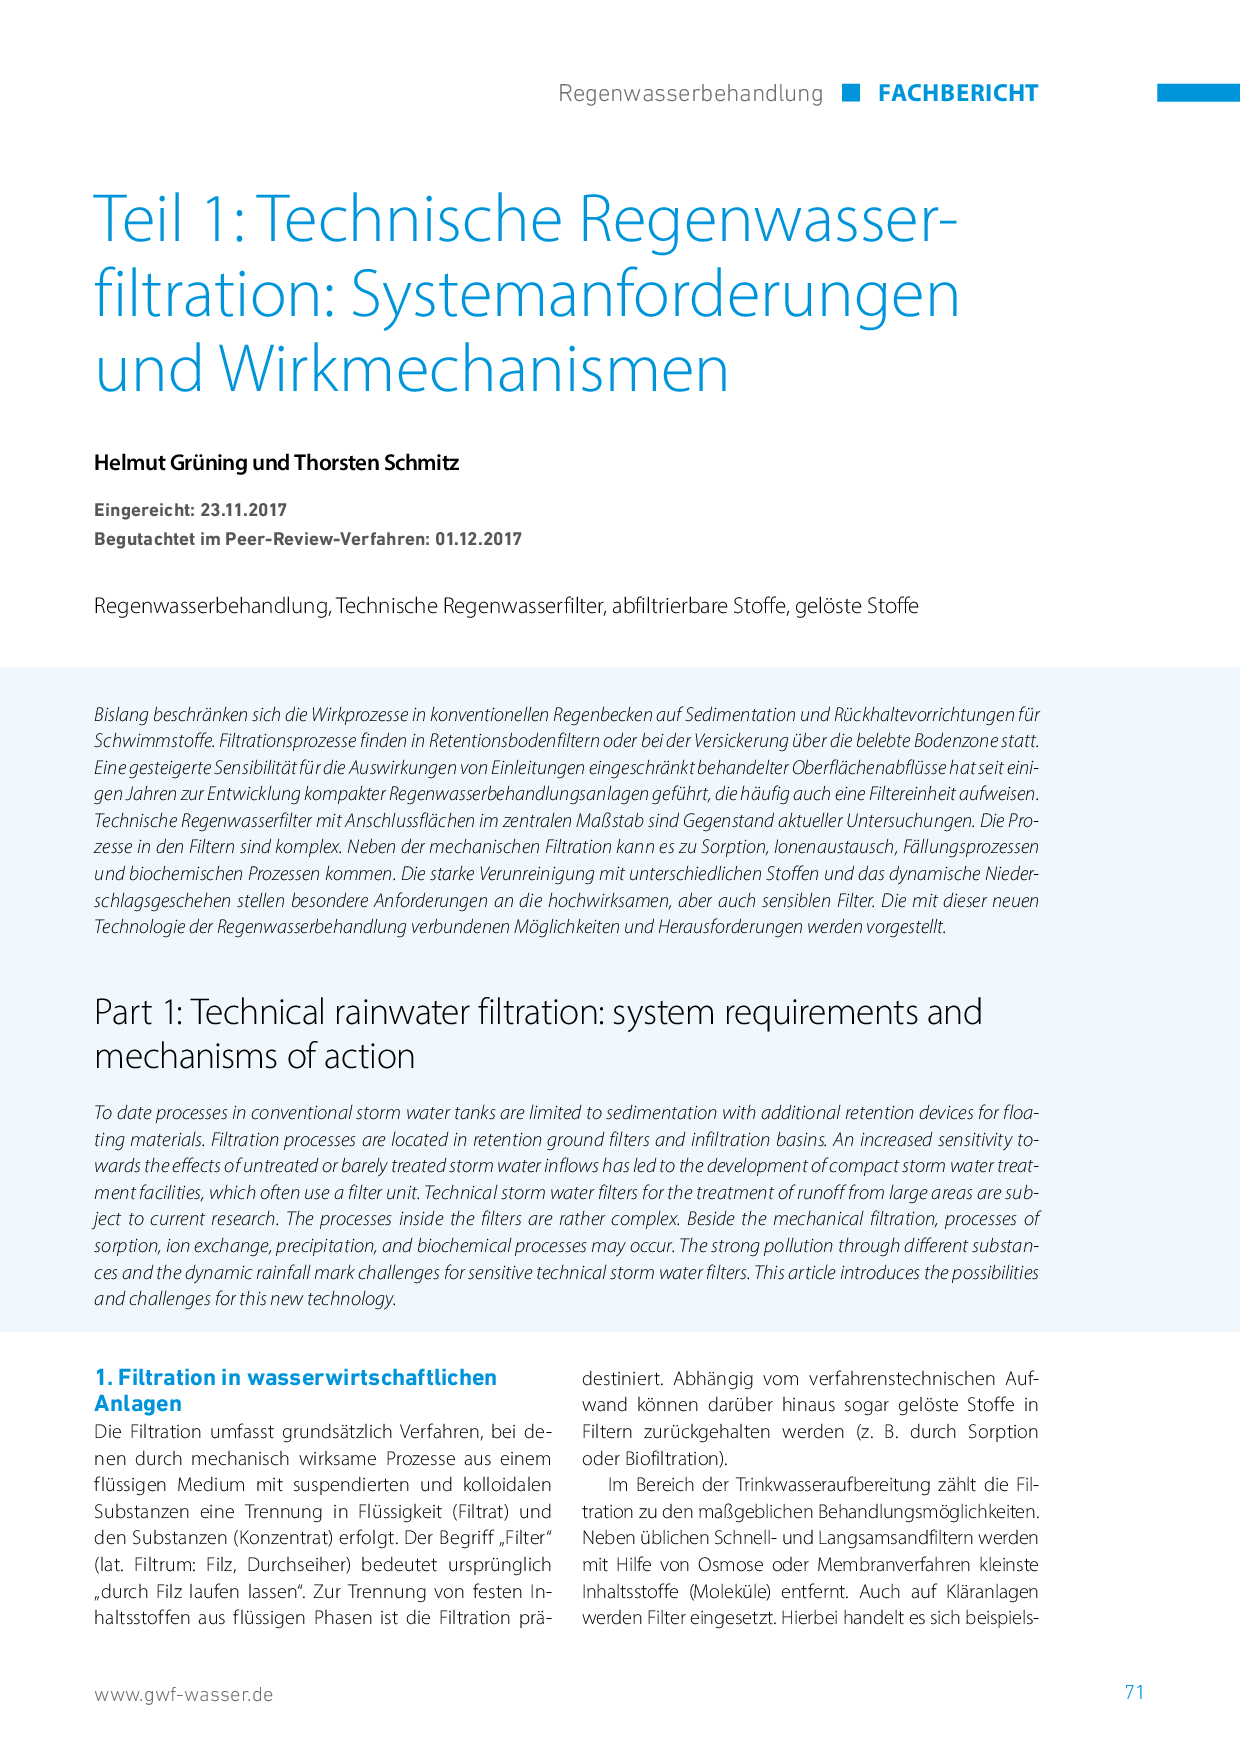 Teil 1: Technische Regenwasserfiltration: Systemanforderungen und Wirkmechanismen